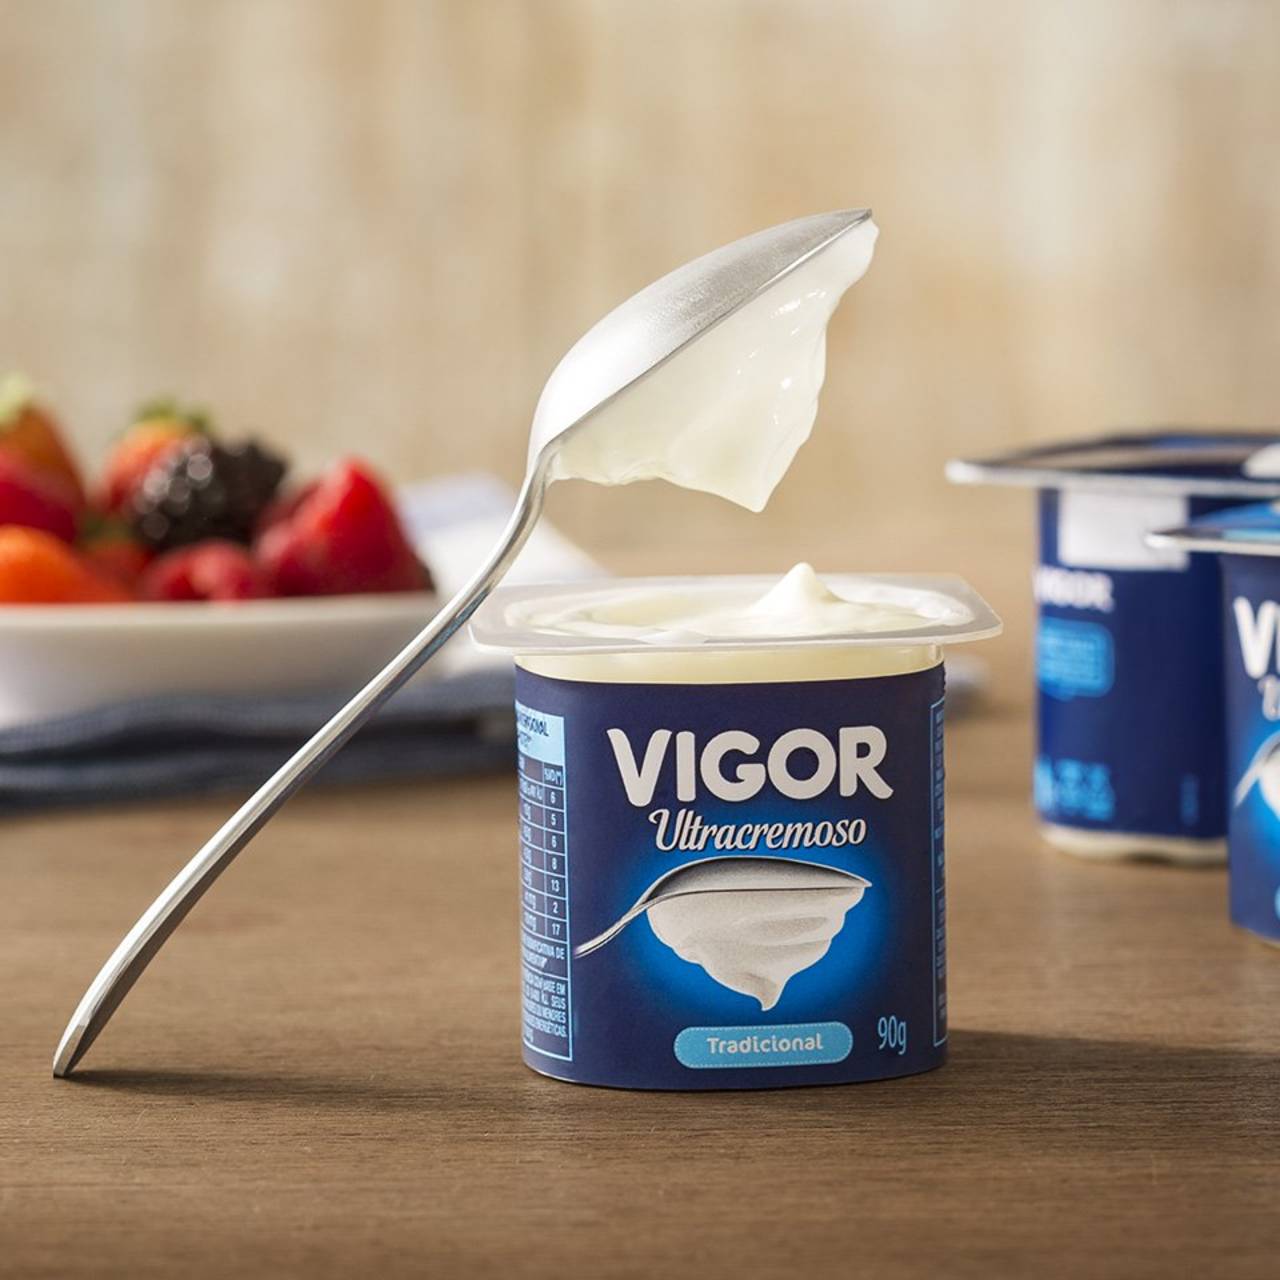 Expansión. La firma láctea Vigor es la empresa más grande de productos lácteos en Brasil. (ARCHIVO)